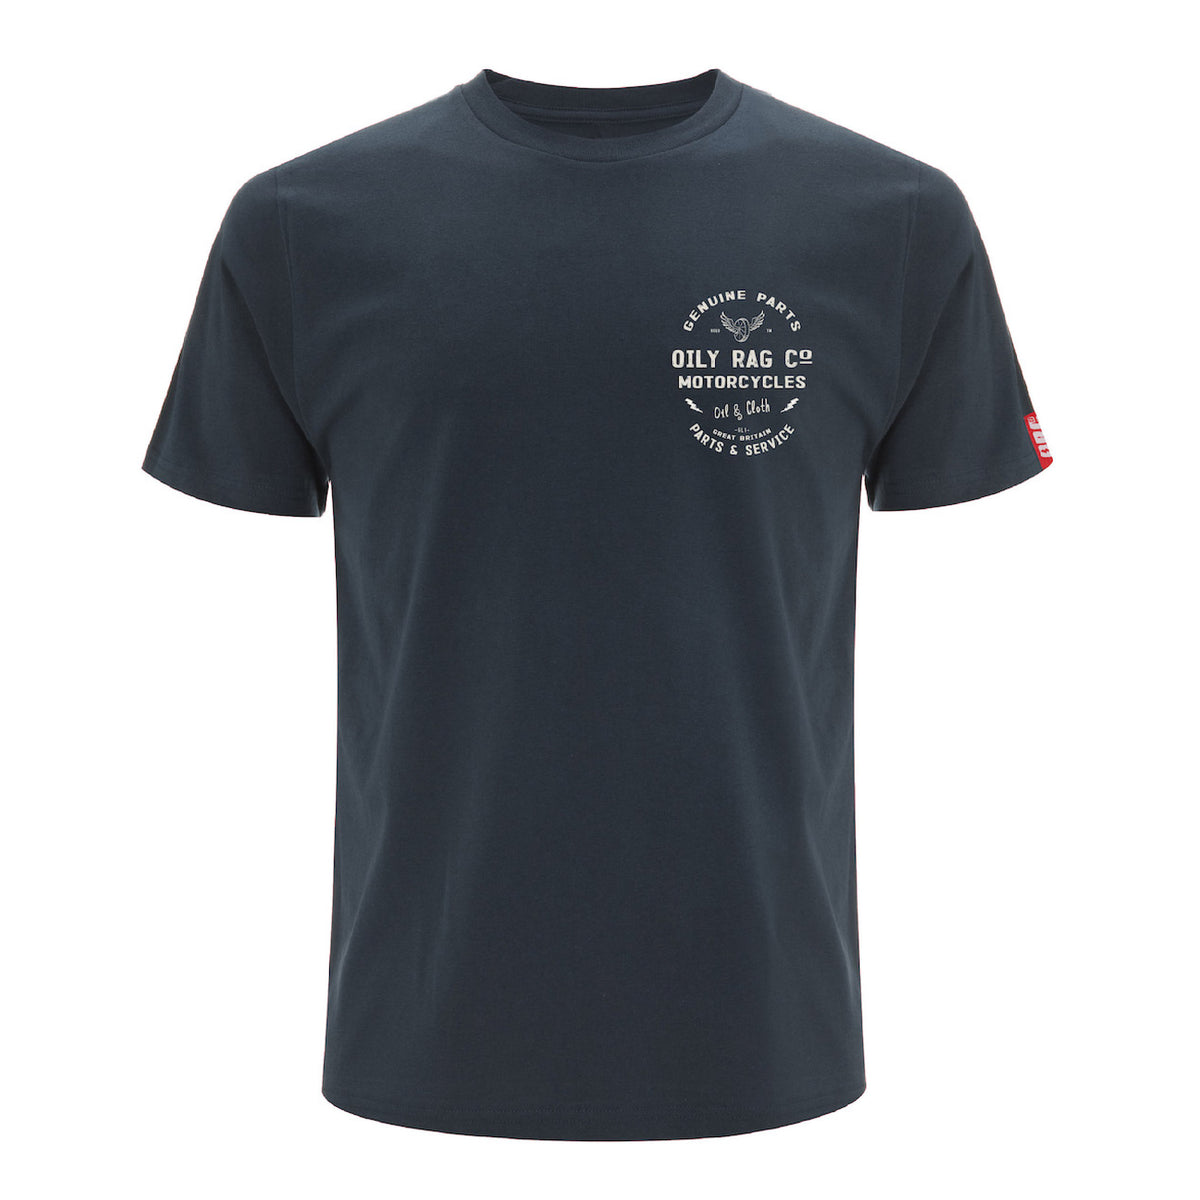 Parts & Service T-shirt - Denim Blue - Black Label Collection – Oily Rag Co